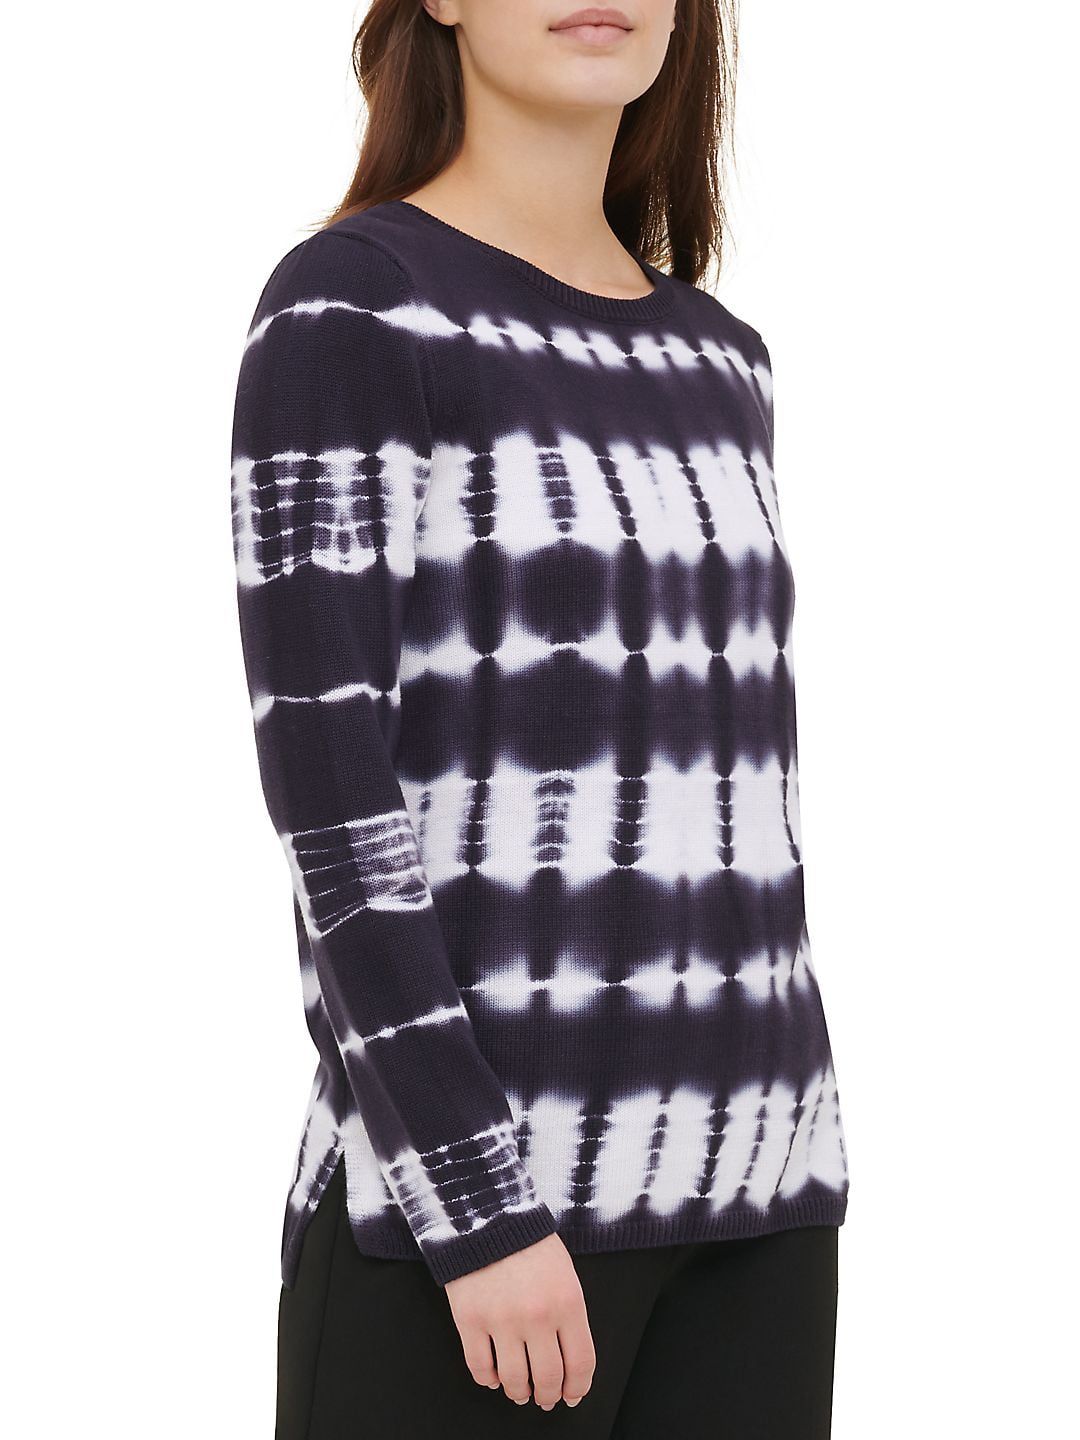 Ambassade Discriminatie op grond van geslacht sarcoom Calvin Klein Women's Tie Dye Cotton Sweater Blue Size Large - Walmart.com